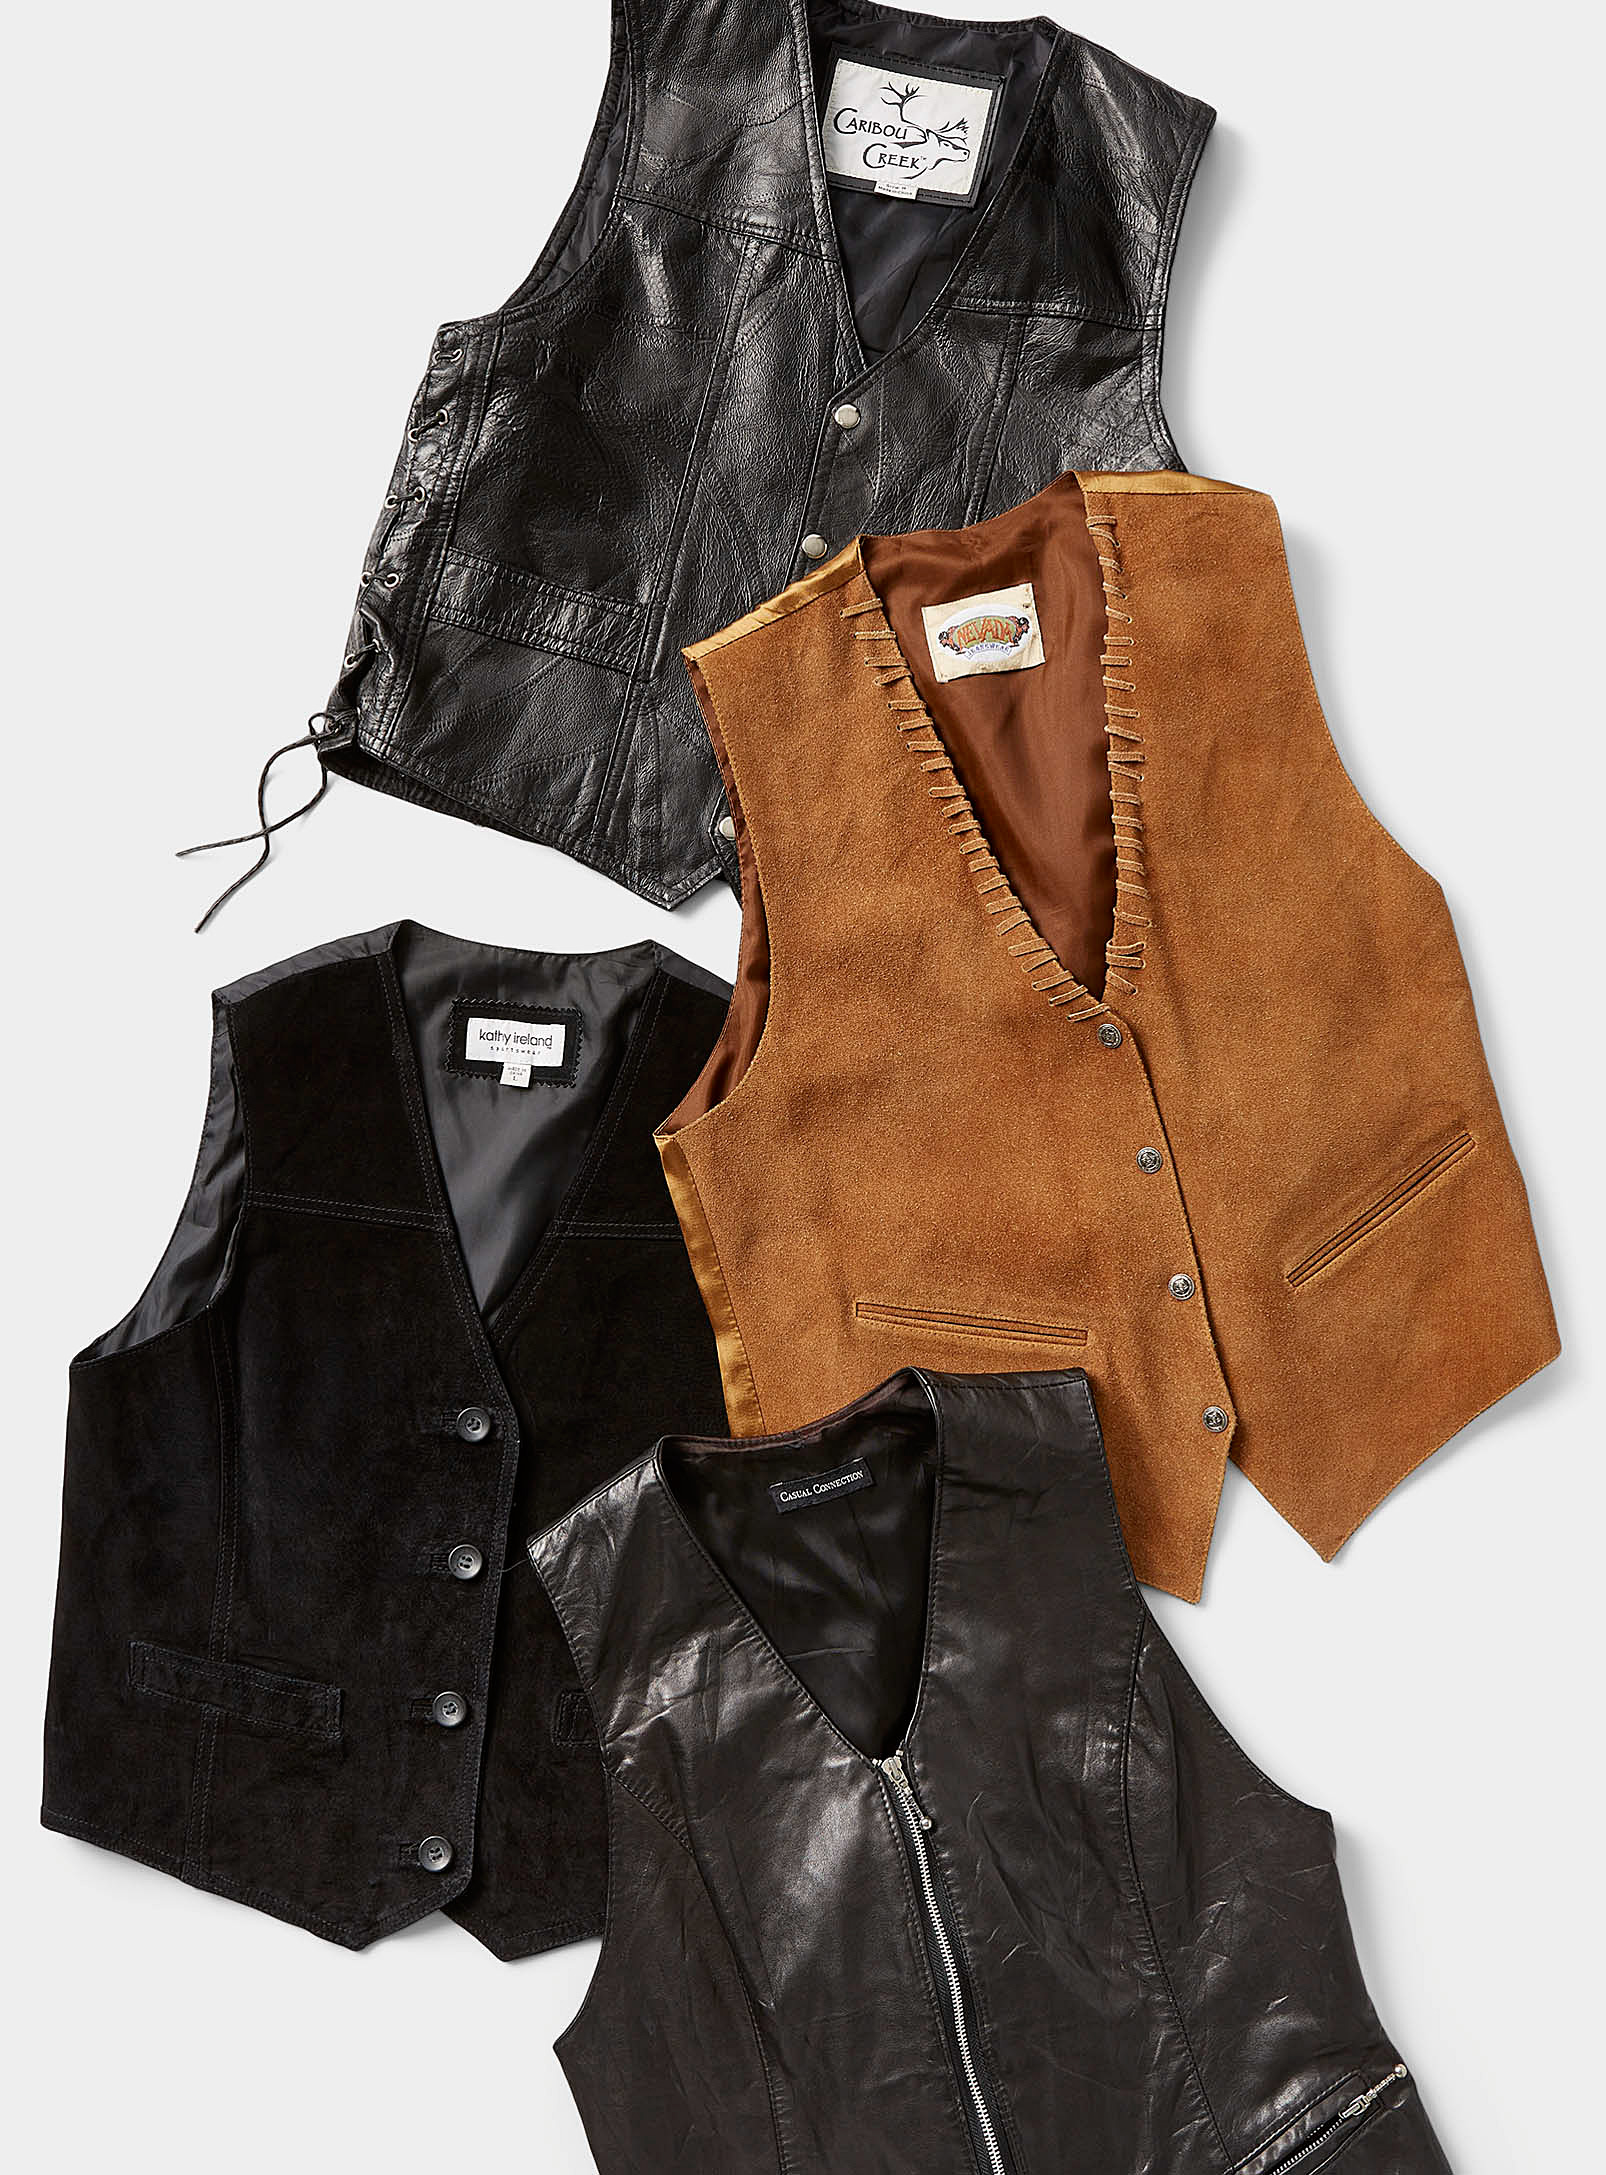 Twik - Women's Leather or suede vest Archives - Unique vintage pieces